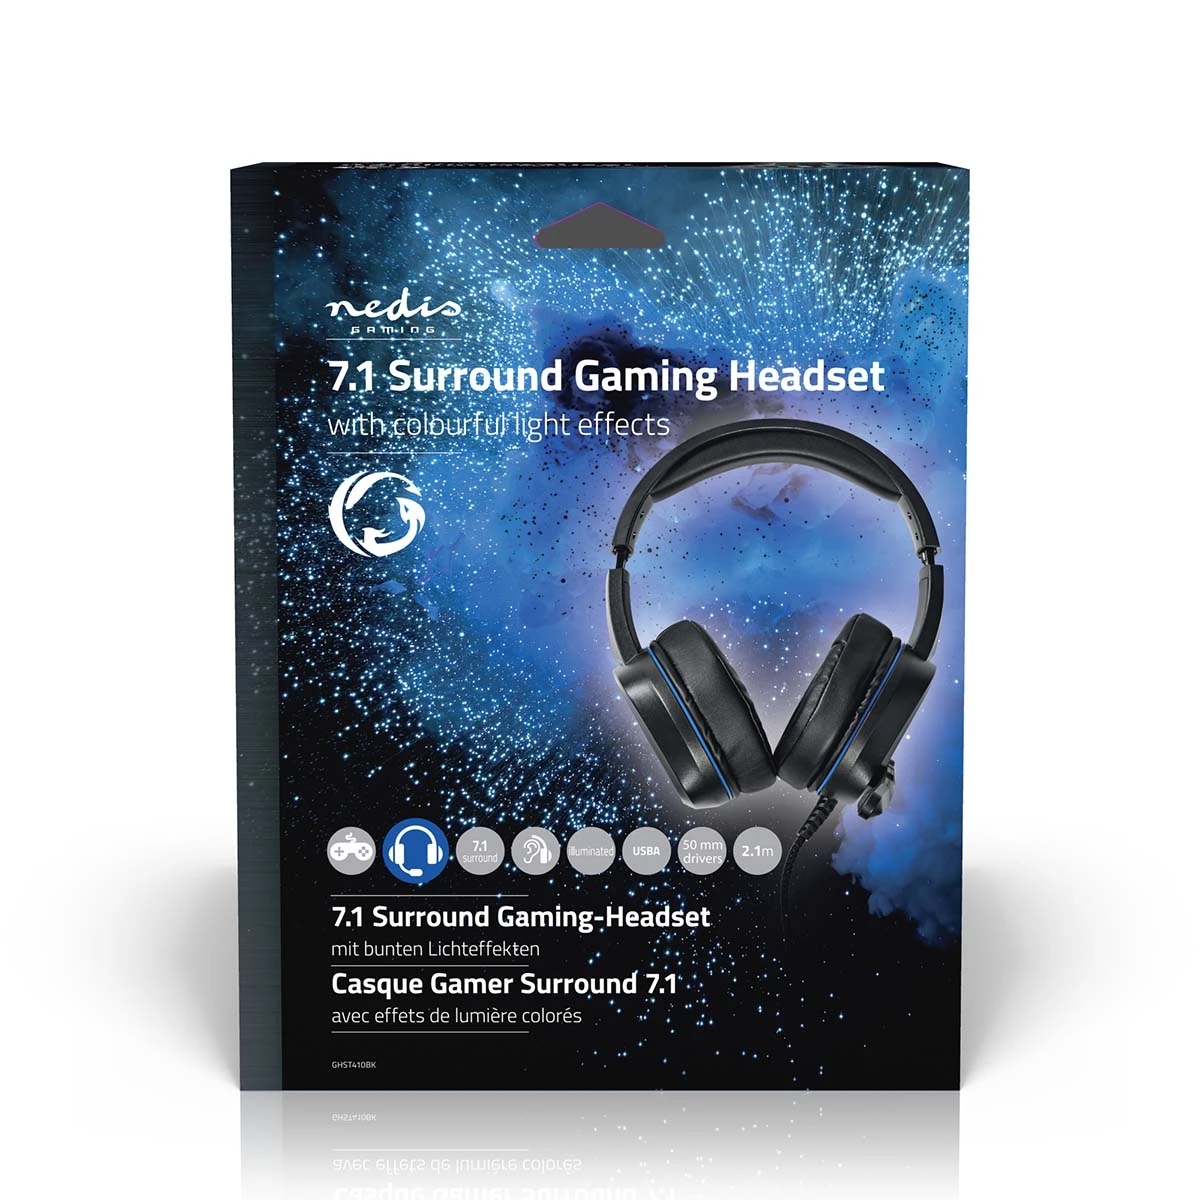 Gaming Headset